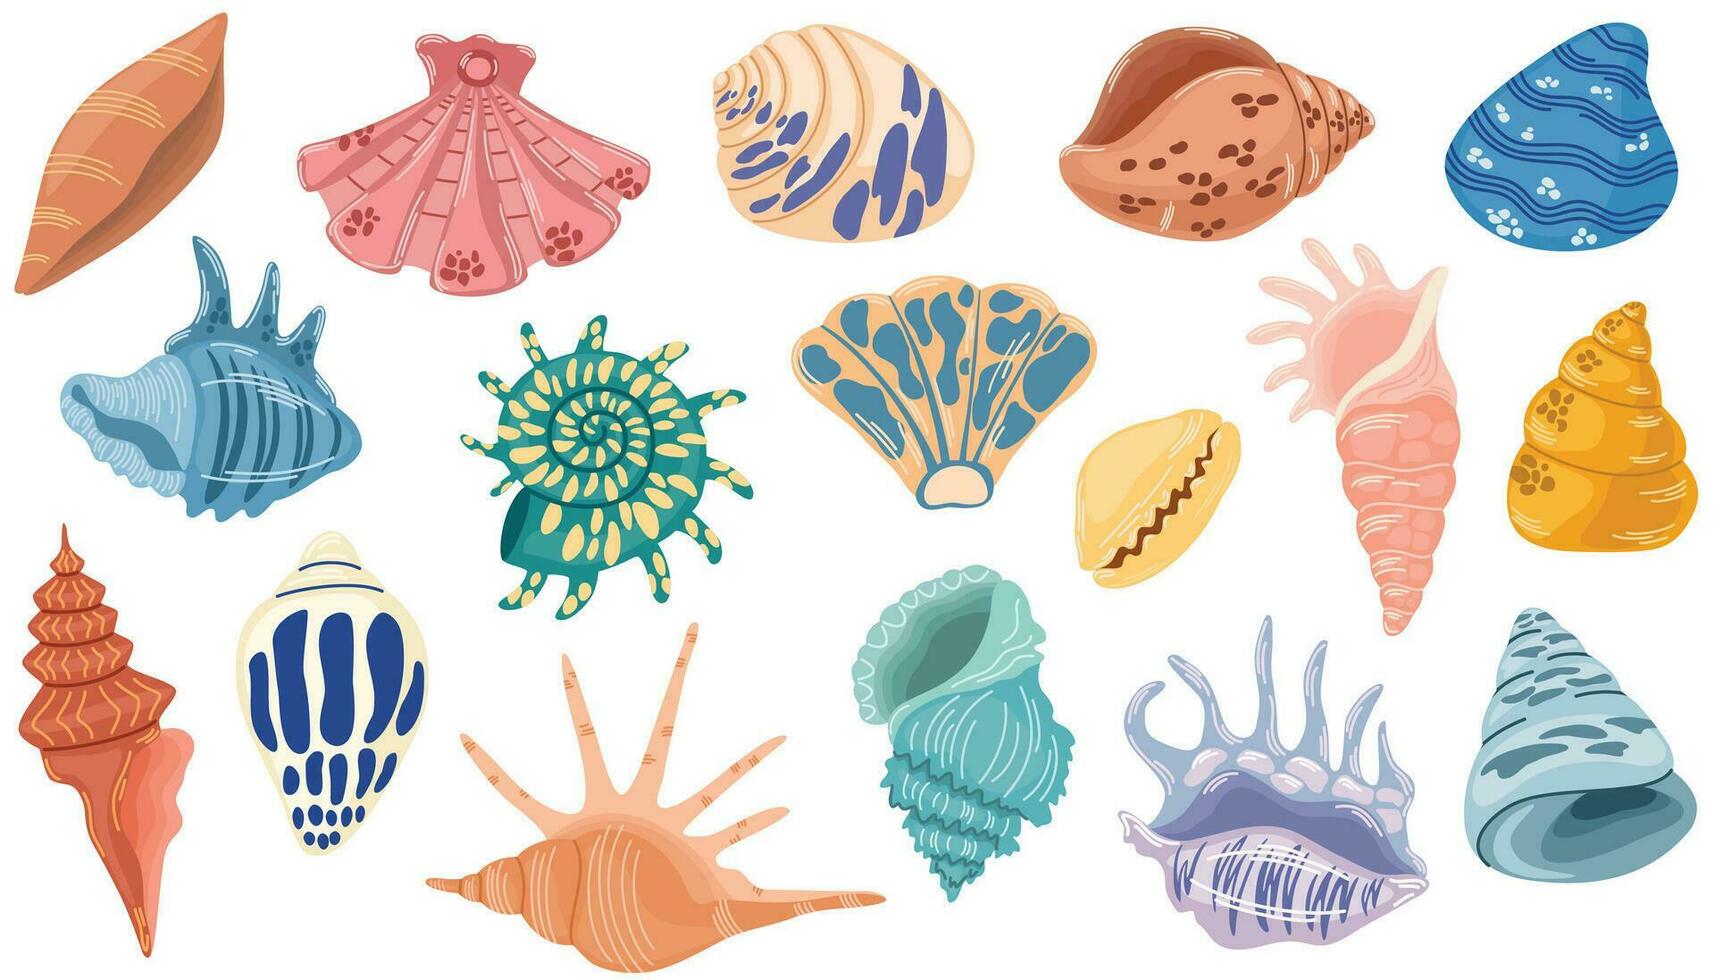 concha colocar. varios molusco conchas marinas diferente formularios, estrella de mar, coral. submarino flora, mar plantas. verano vacaciones recopilación, tropical playa conchas vector ilustración.